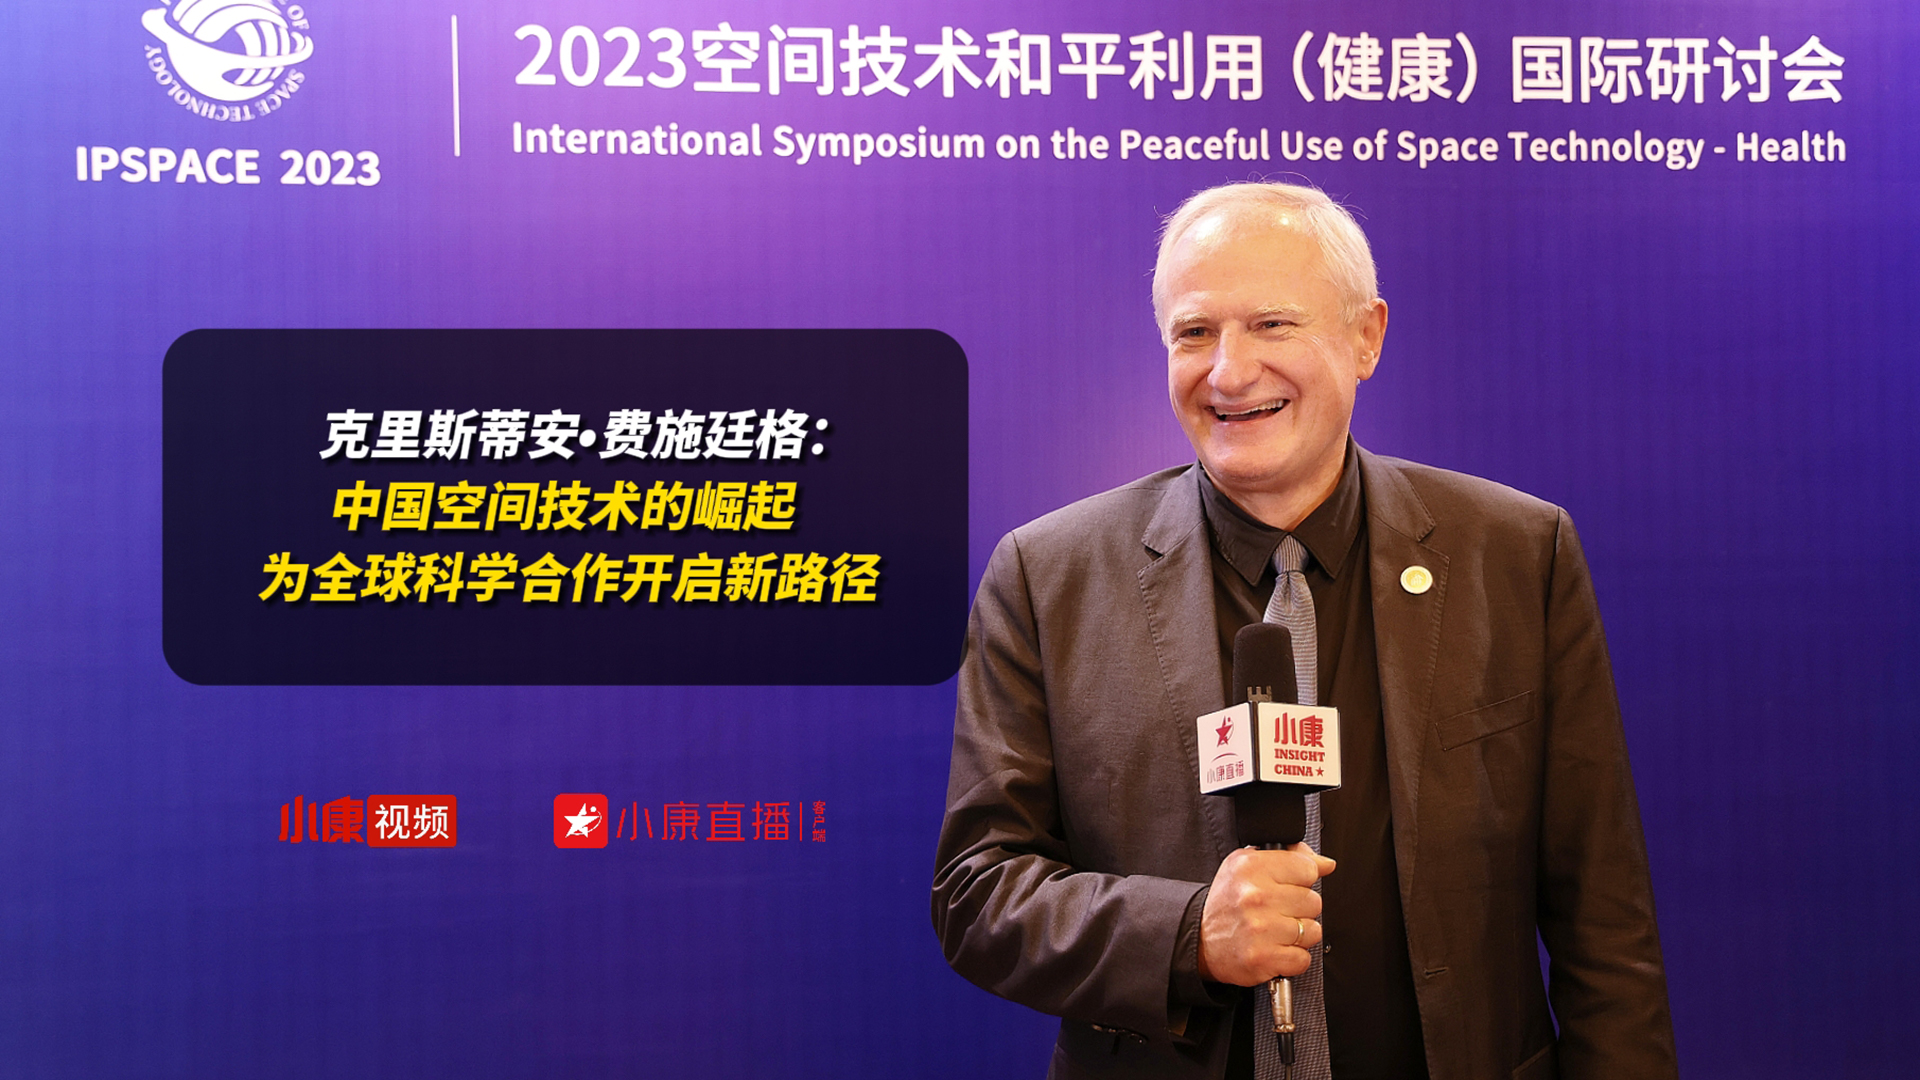 克里斯蒂安•费施廷格：中国空间技术的崛起 为全球科学合作开启新路径